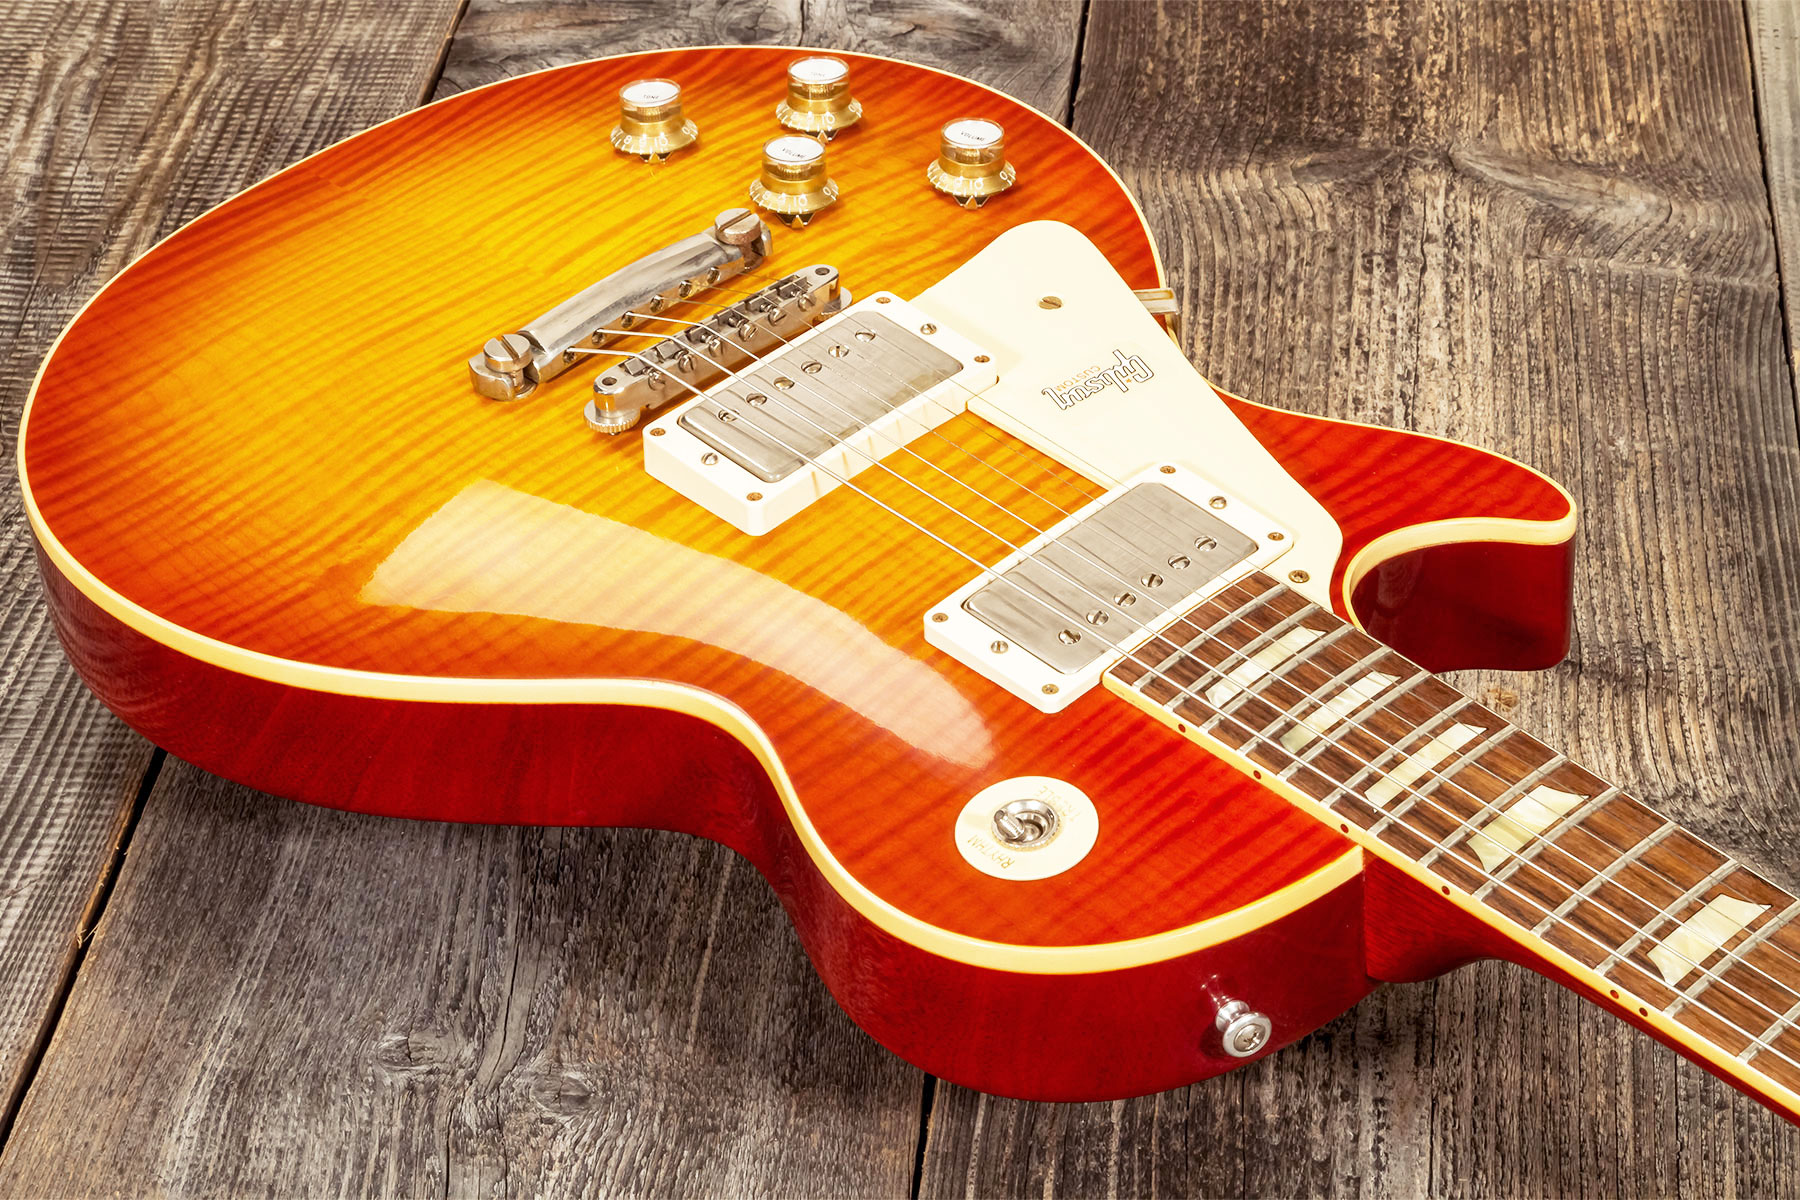 Gibson Custom Shop Les Paul Standard 1960 Reissue Lh Gaucher 2h Ht Rw #09122 - Vos Tangerine Burst - Guitarra electrica para zurdos - Variation 2